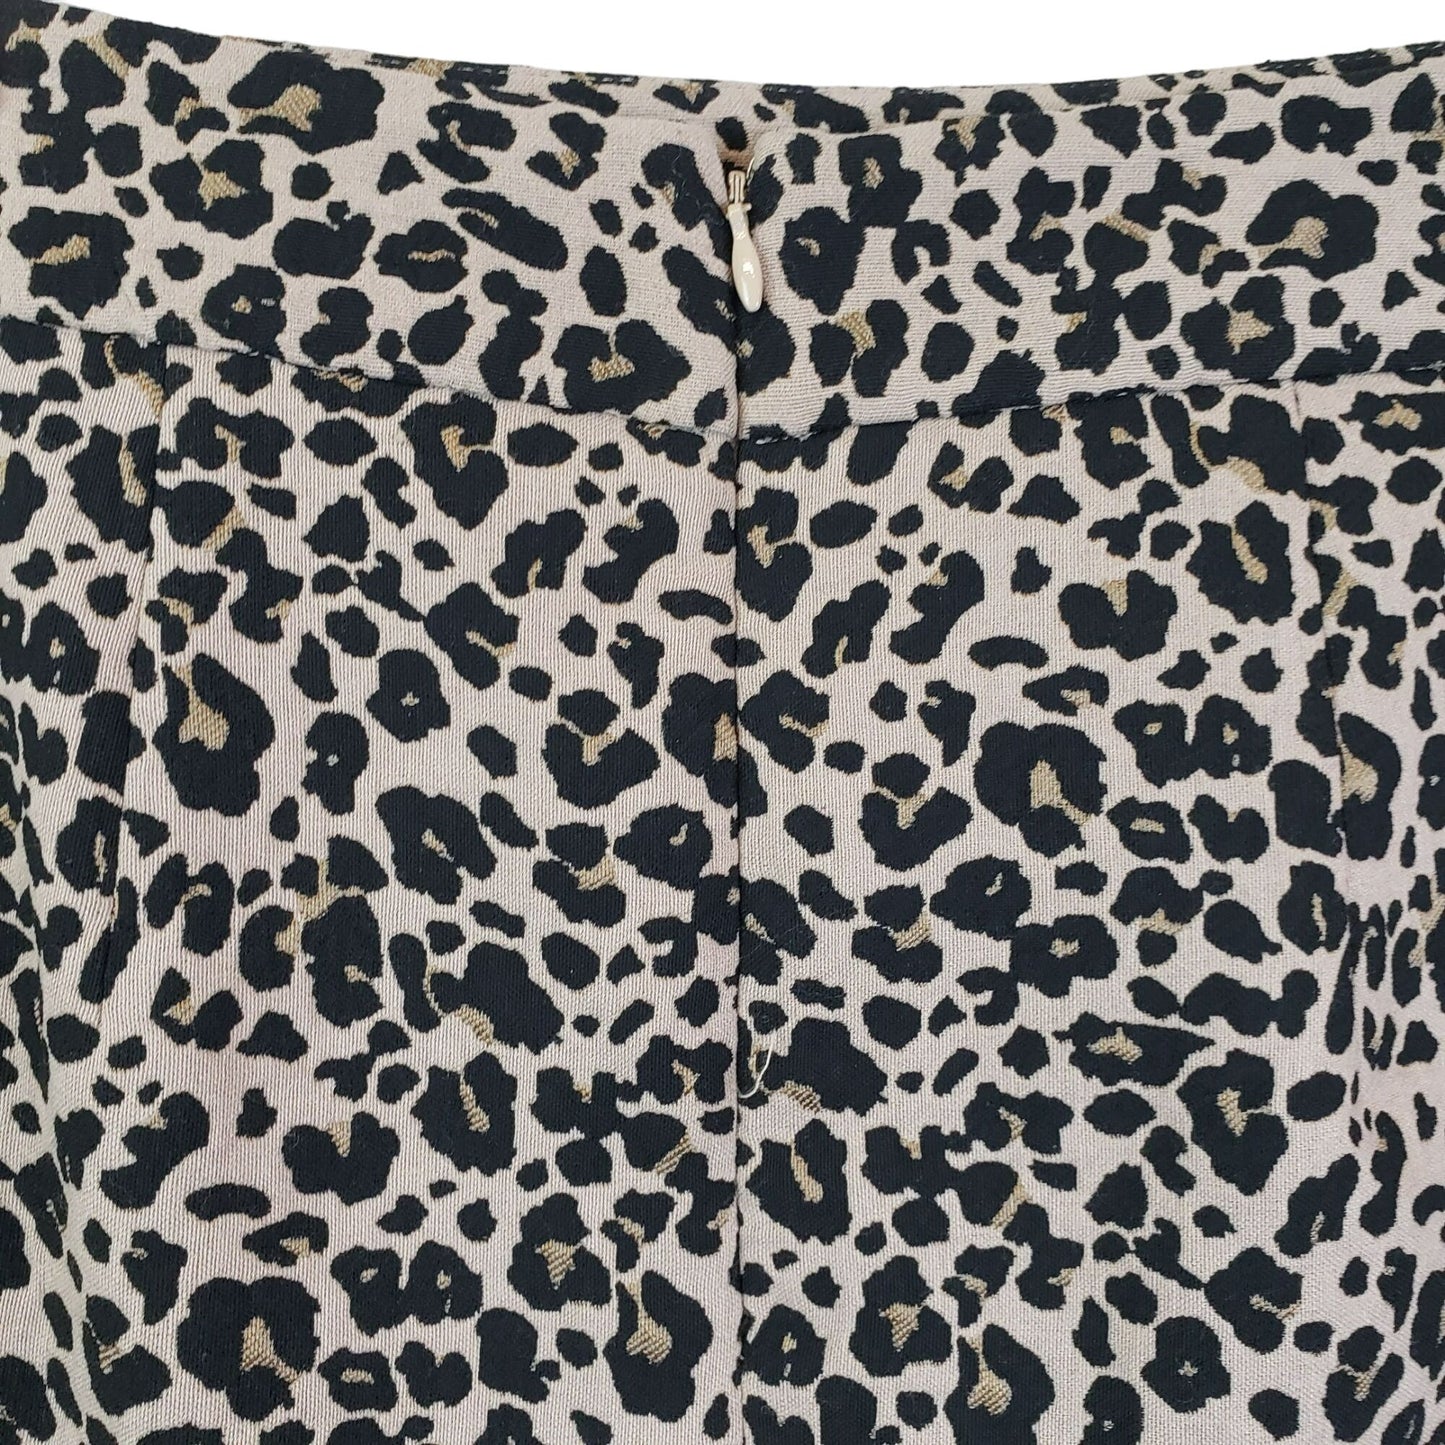 Loft Leopard Print Mini Skirt Size 6